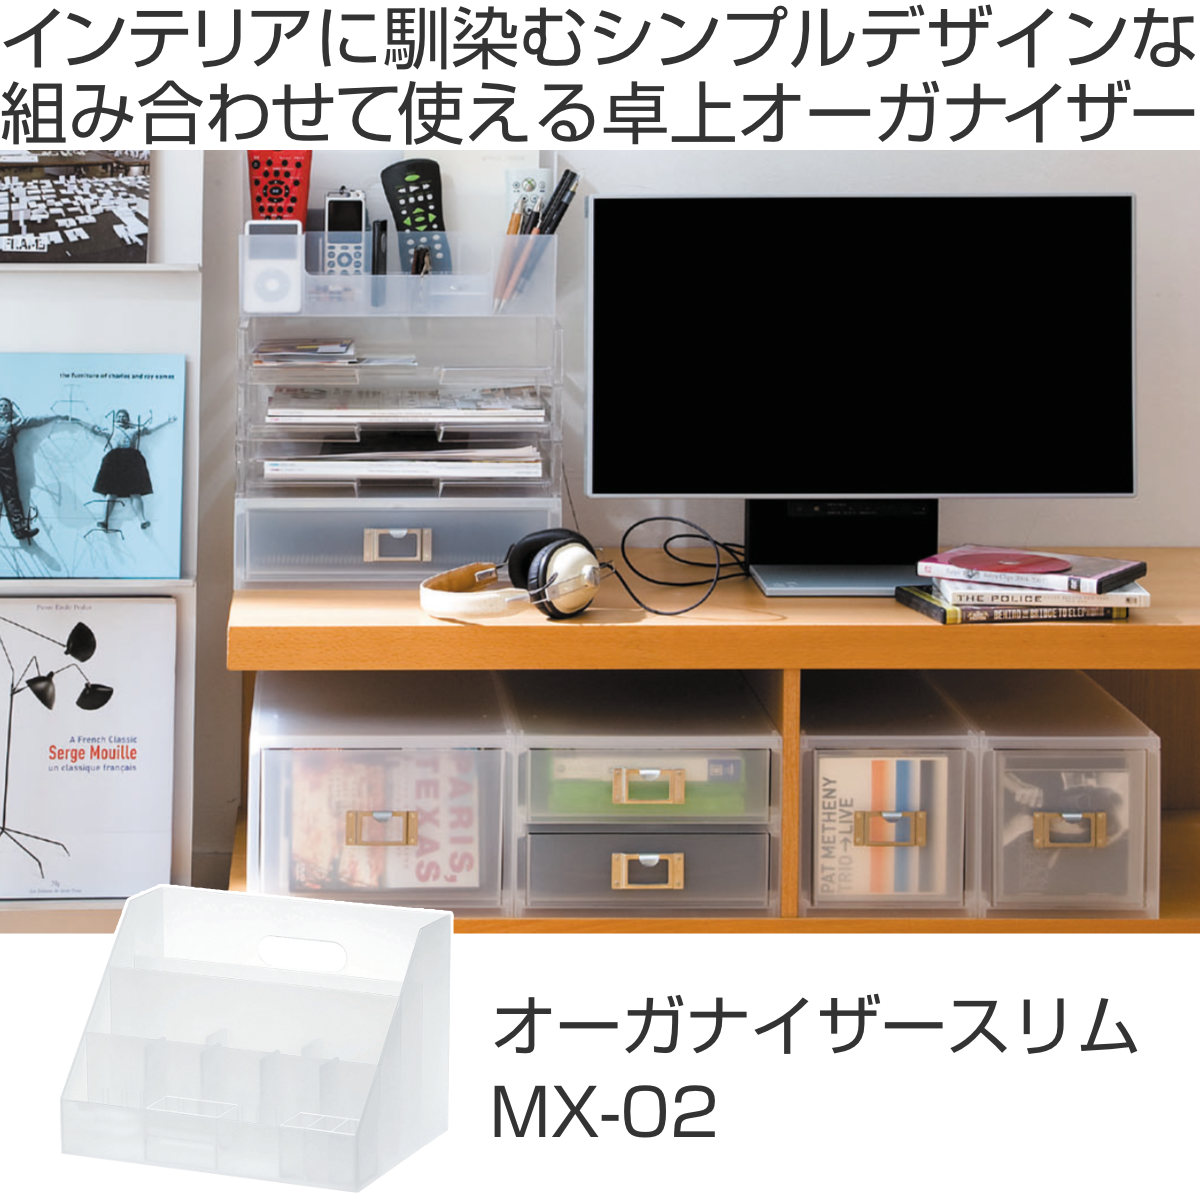 小物収納 プラスチック 卓上収納 MX-02 A4 サイズ 収納ボックス